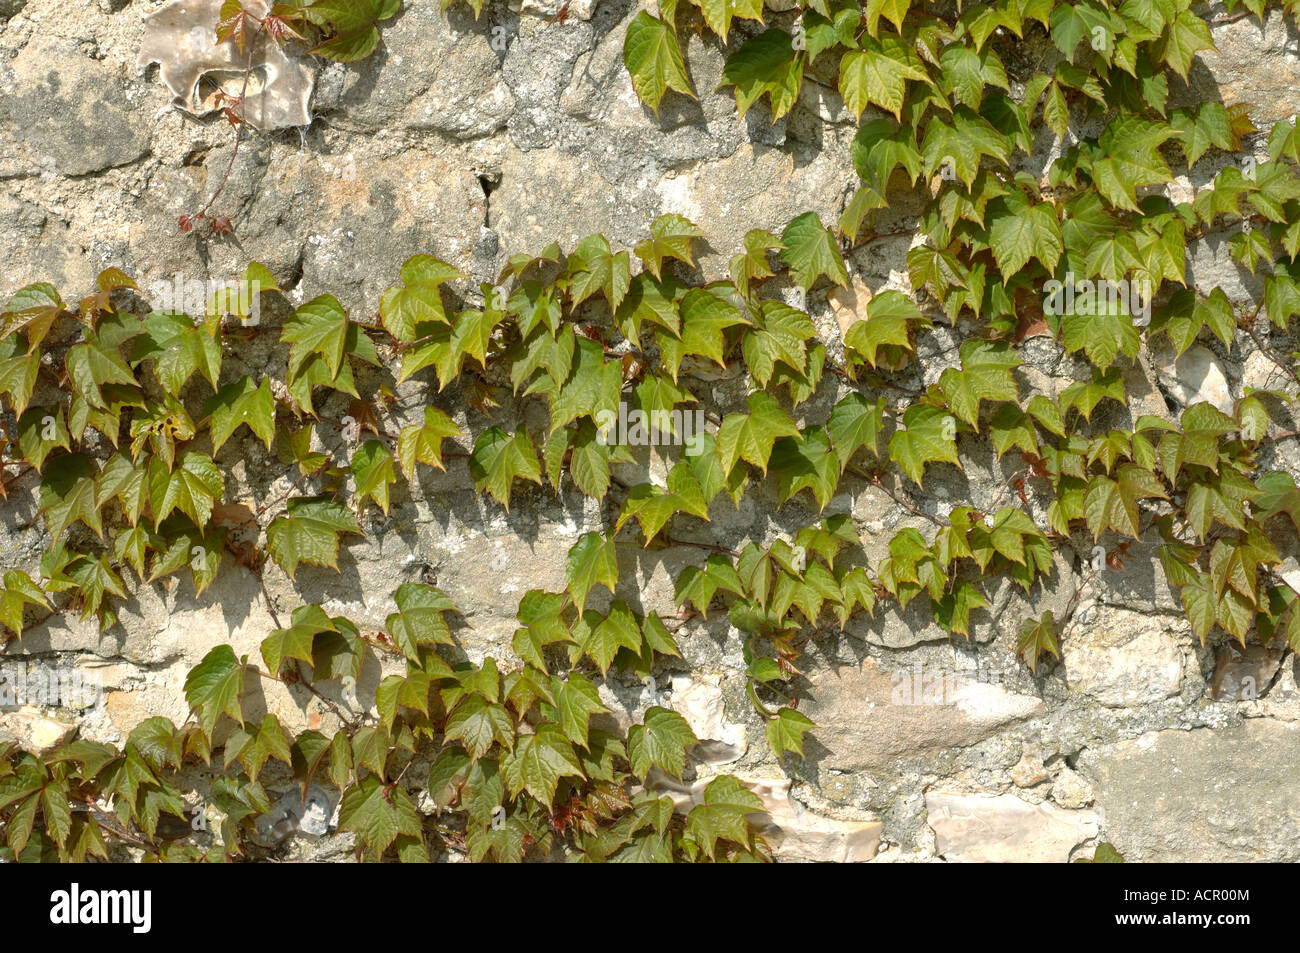 Boston ivy Parthenocissus tricuspidata giovani gara fogliame a molla su una parete di roccia calcarea Foto Stock